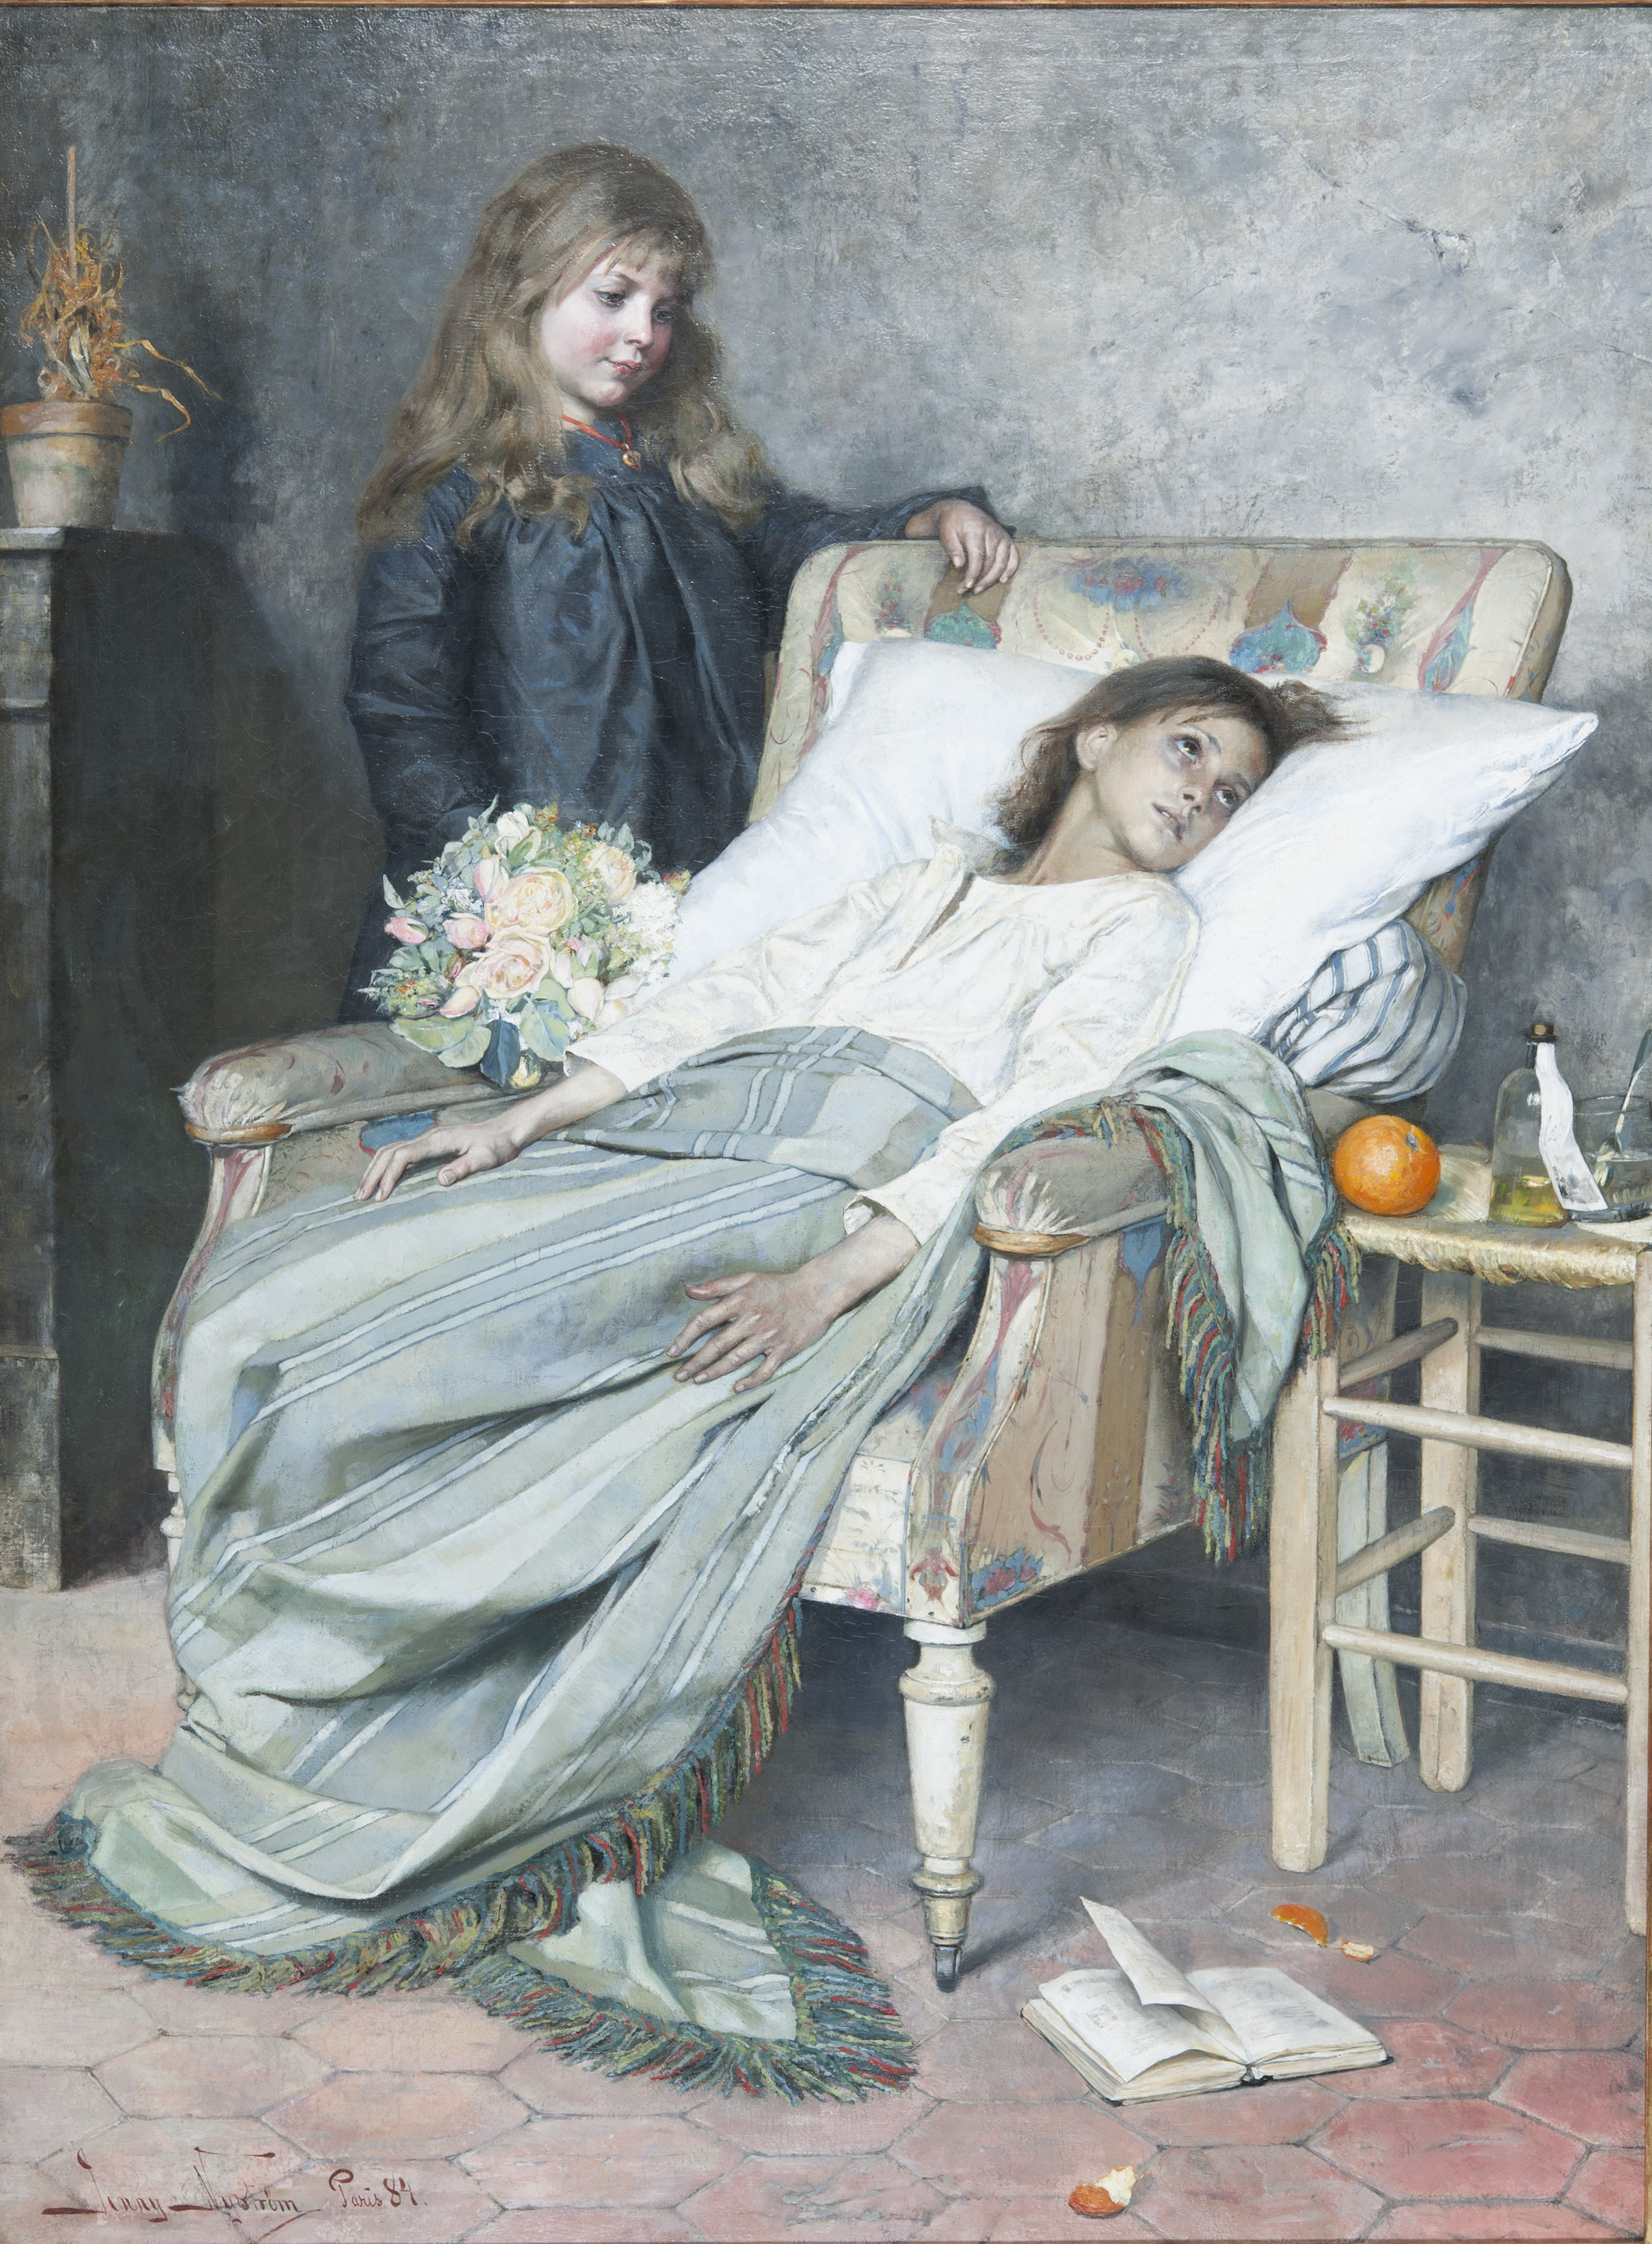 The Convalescent by Jenny Nyström - 1884 - 154 x 115 cm Nationalmuseum